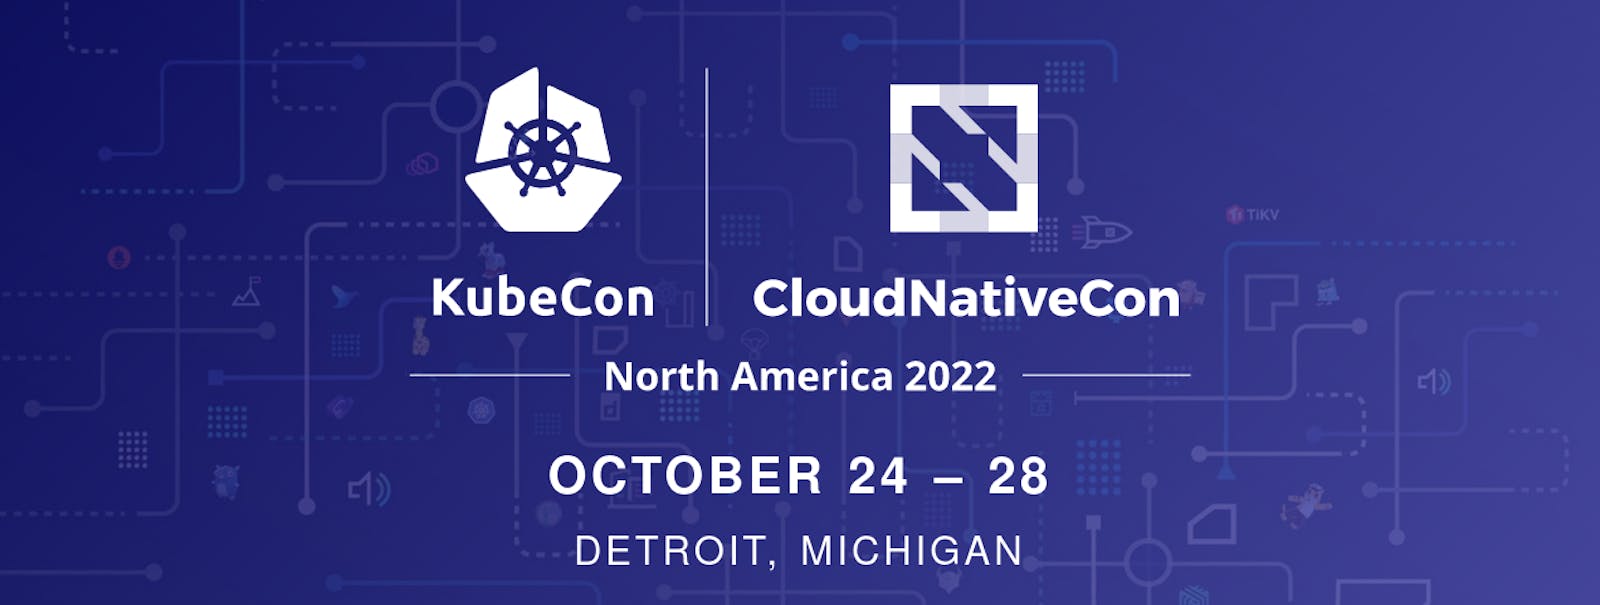 My KubeCon + CloudNativeCon North America 2022 Experience!